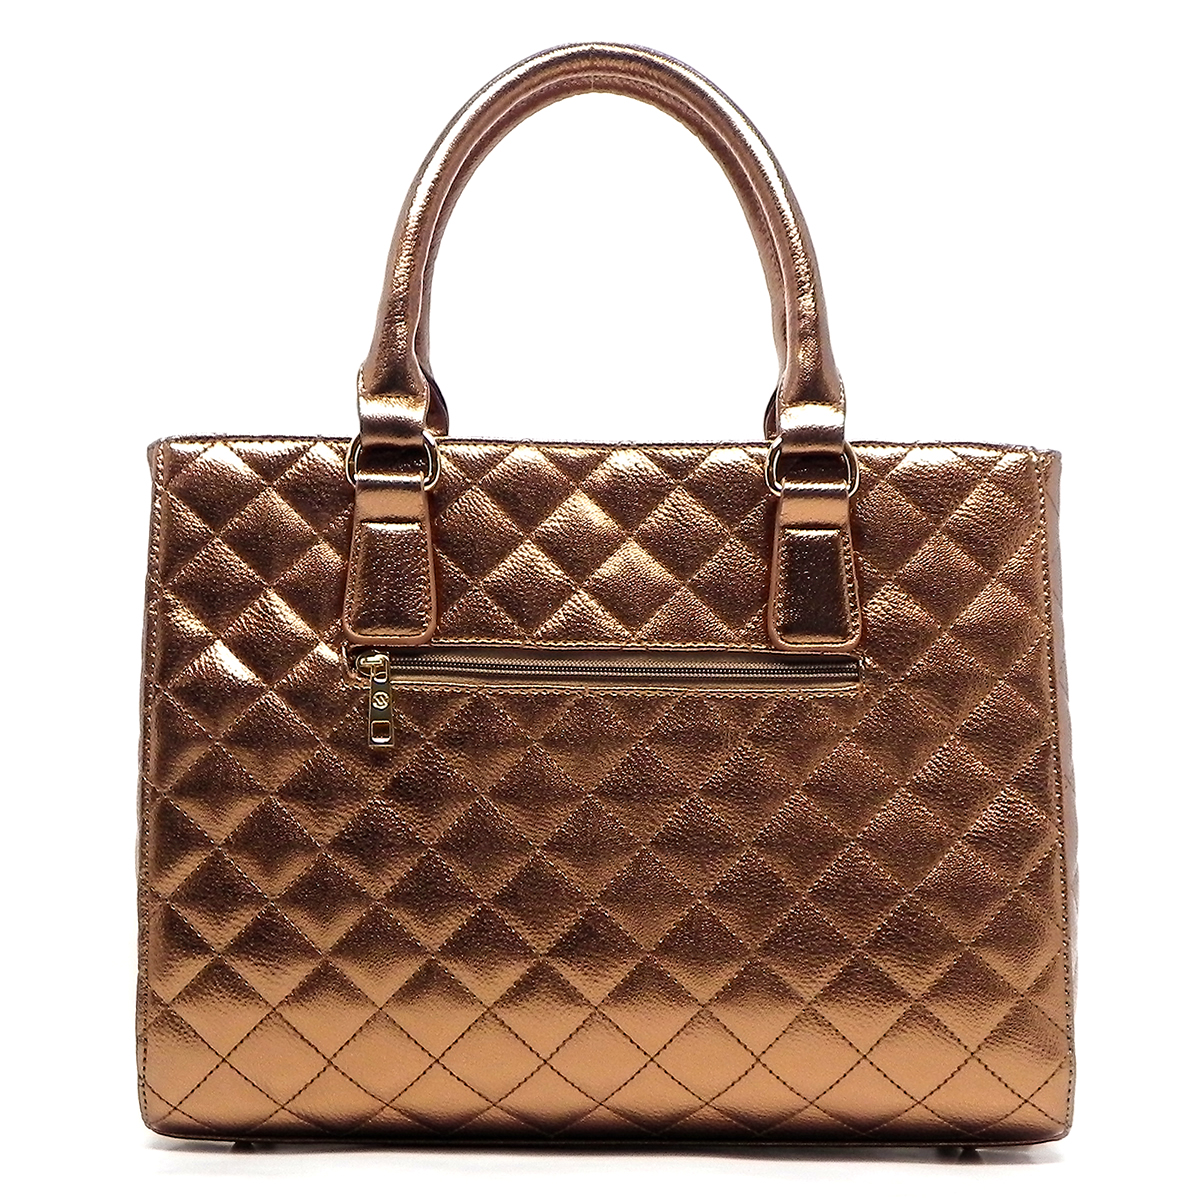 Designer Inspired Handbag - Alba Collection Handbags - Onsale Handbag